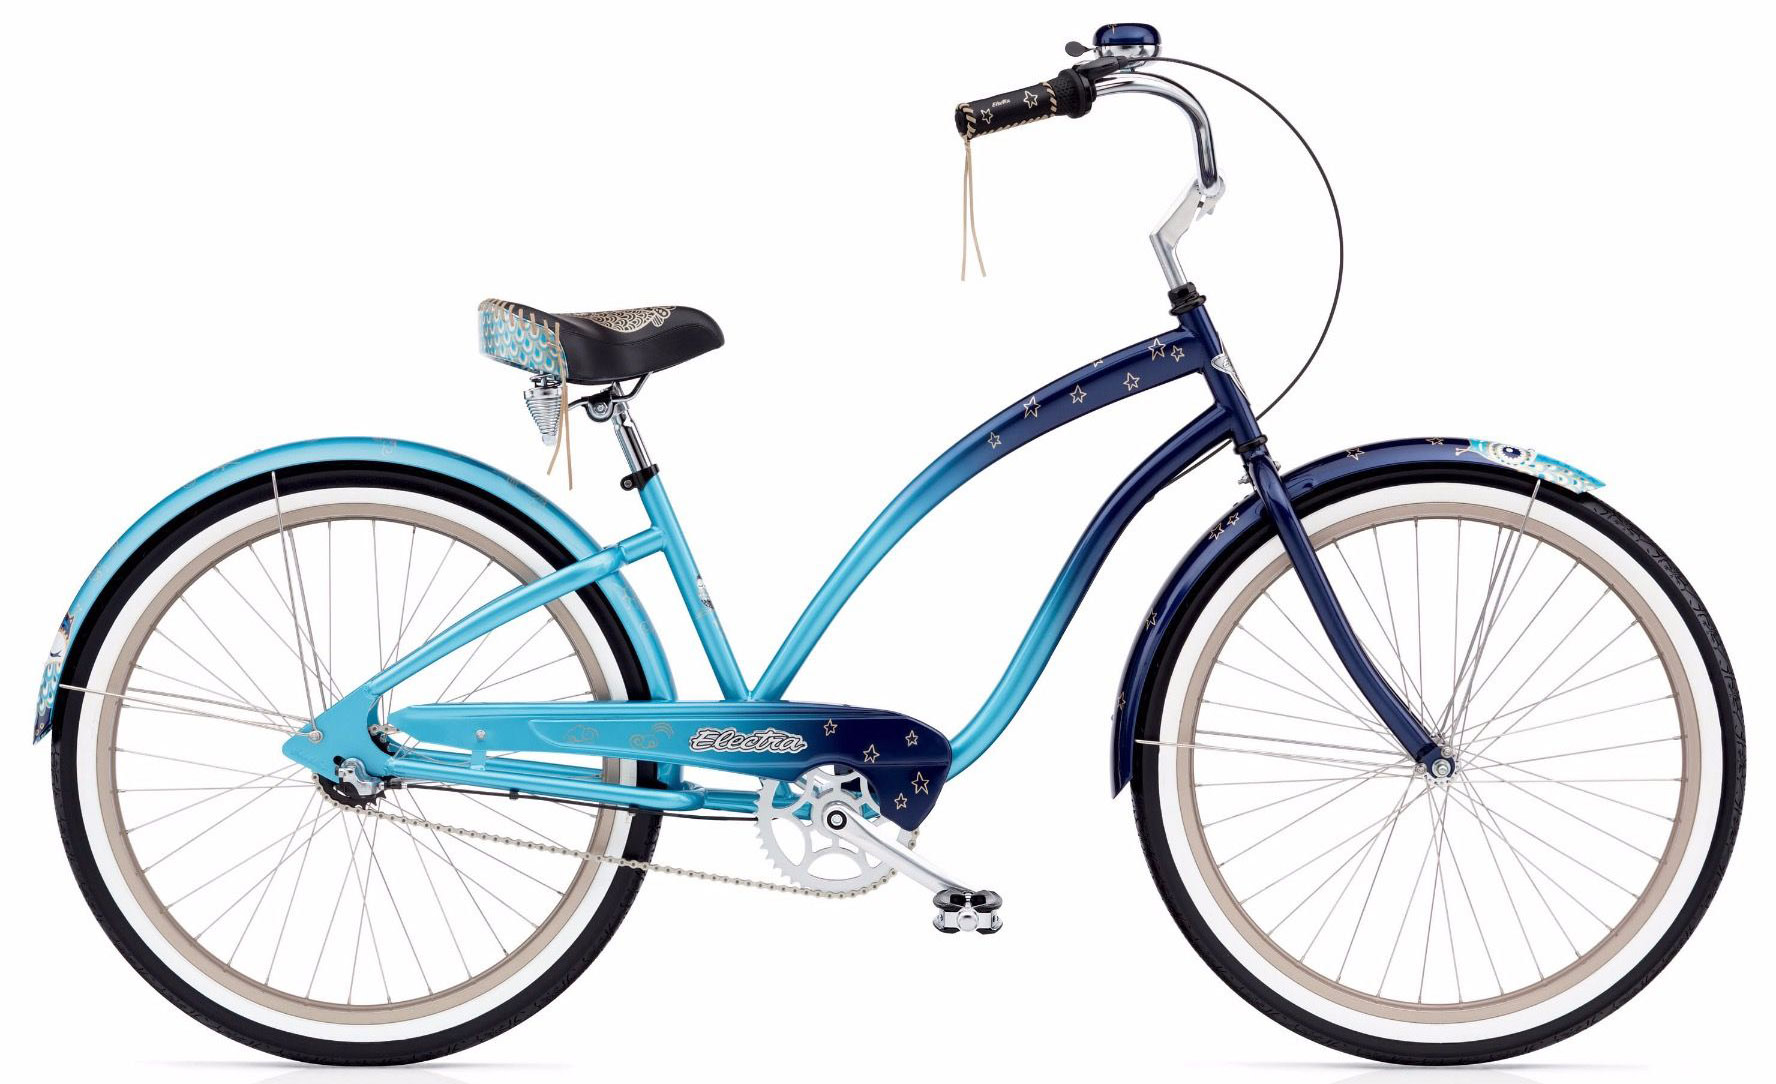  Отзывы о Женском велосипеде Electra Cruiser Night Owl 3i 2020